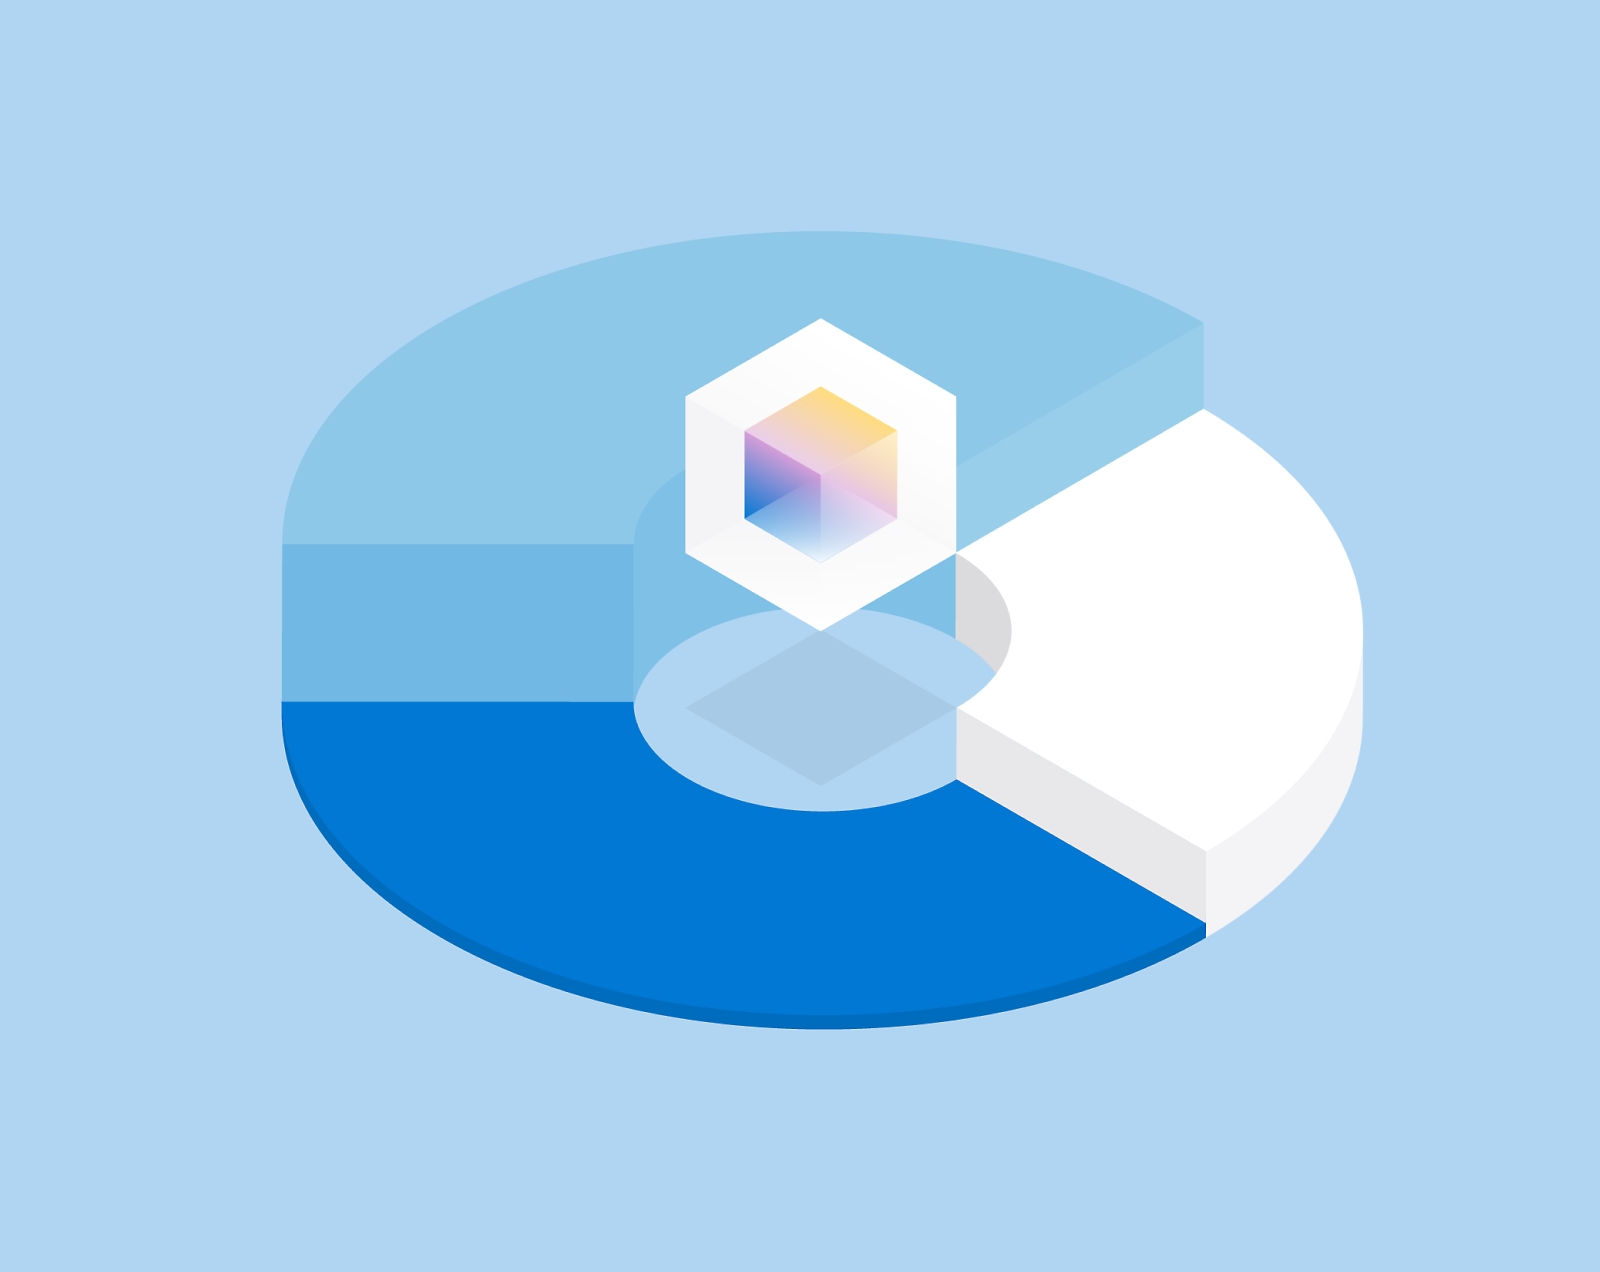 Anillo semitransparente en 3D con un cubo multicolor en el centro y segmentos azules y blancos.